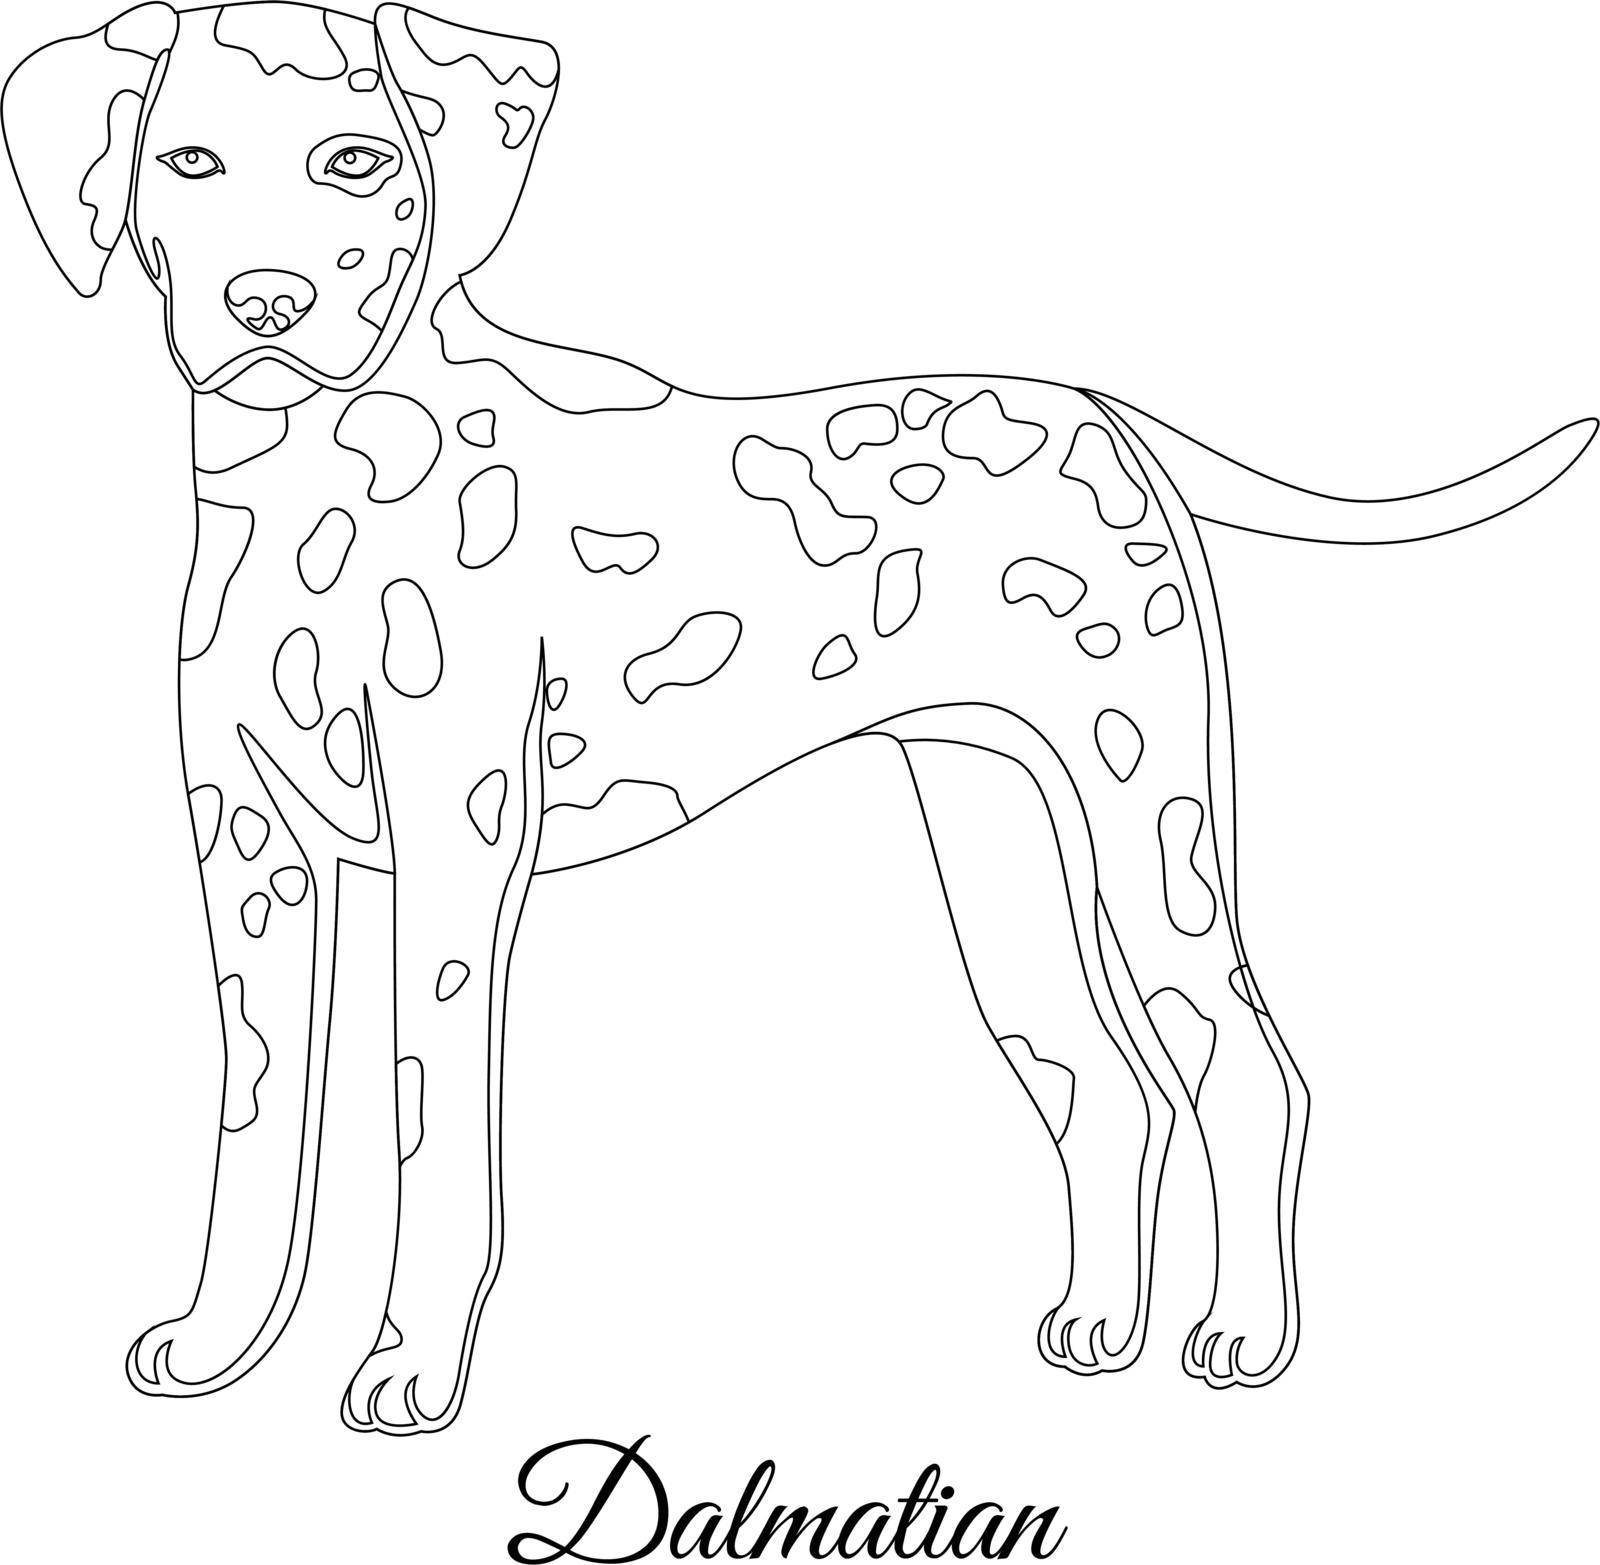 Dalmatian dog outline vector illustration